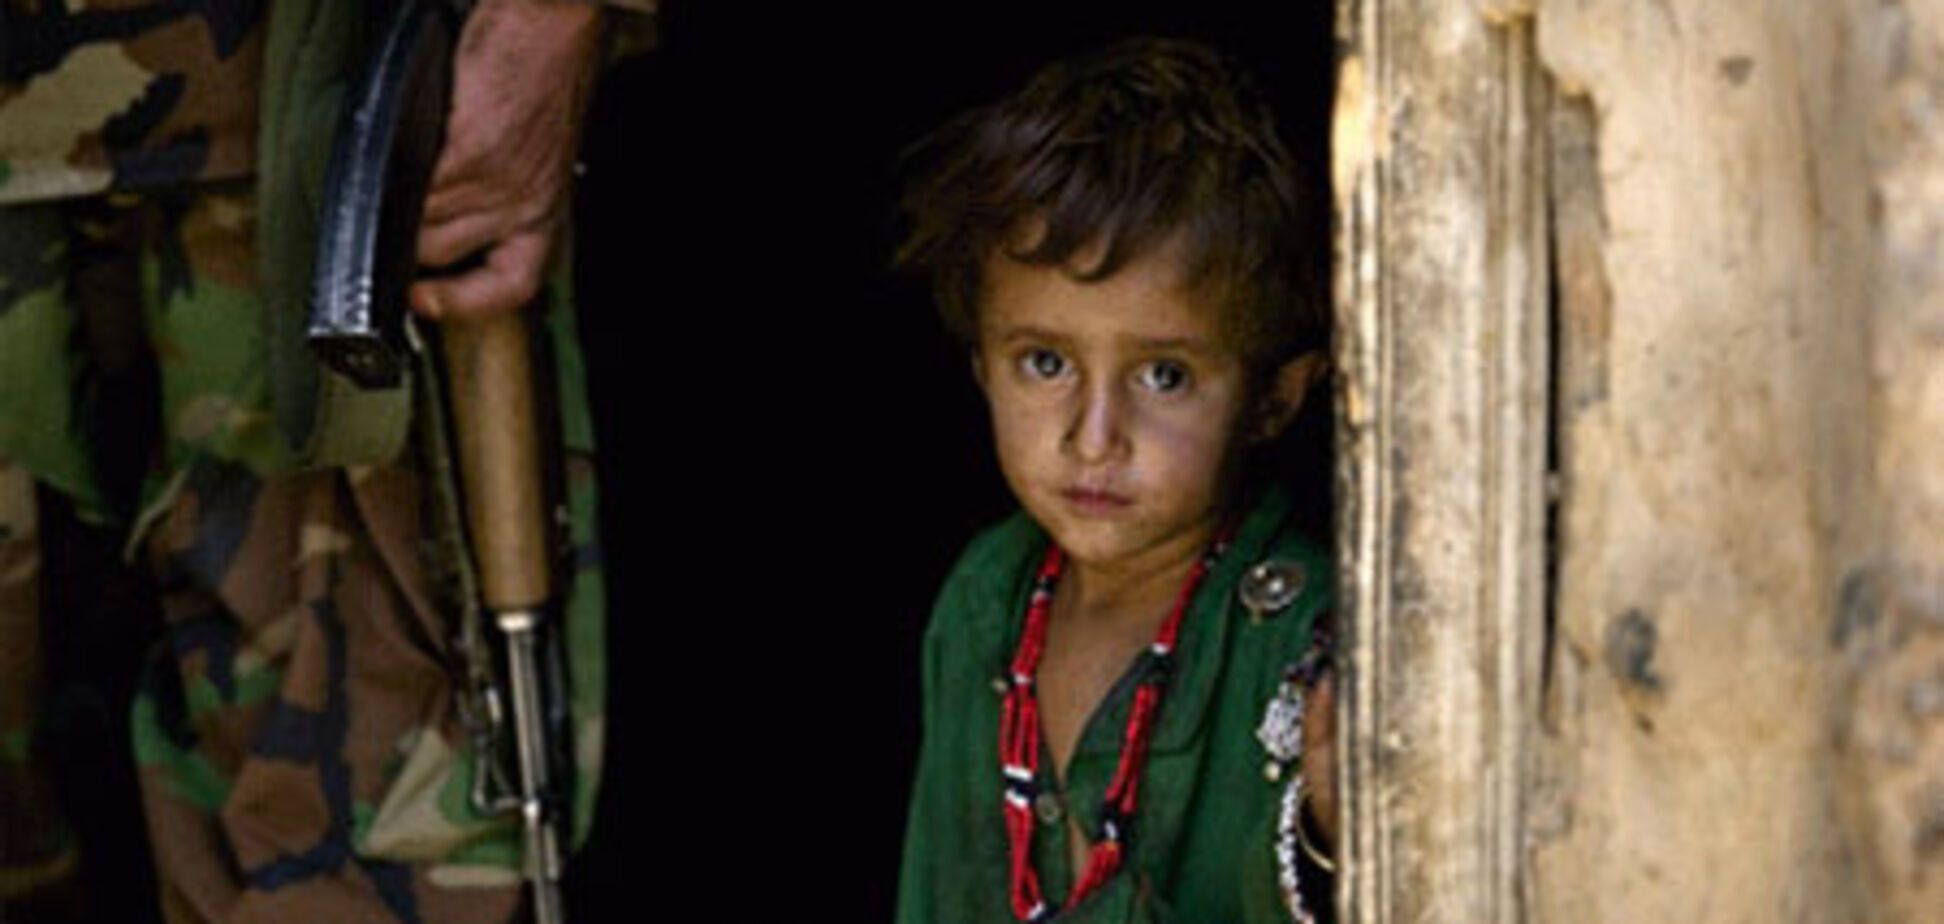 НАТО: В Афганистане детям жить безопаснее, чем в Лондоне